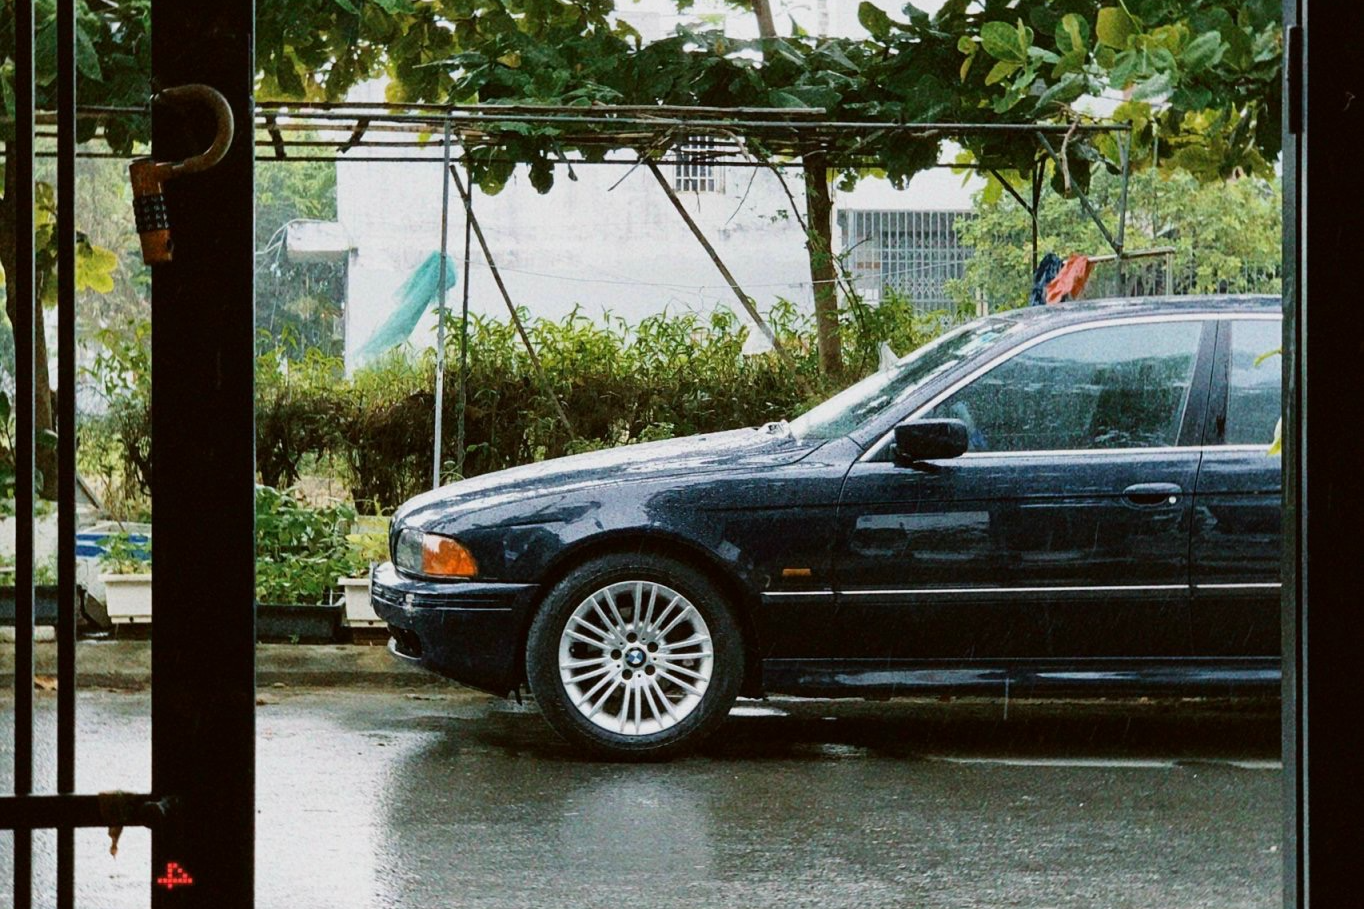 ‘Tay mơ’ đánh liều mua BMW 5-Series giá 150 triệu: ‘Không thành thợ sẽ bị thợ garage vật’ - ảnh 4